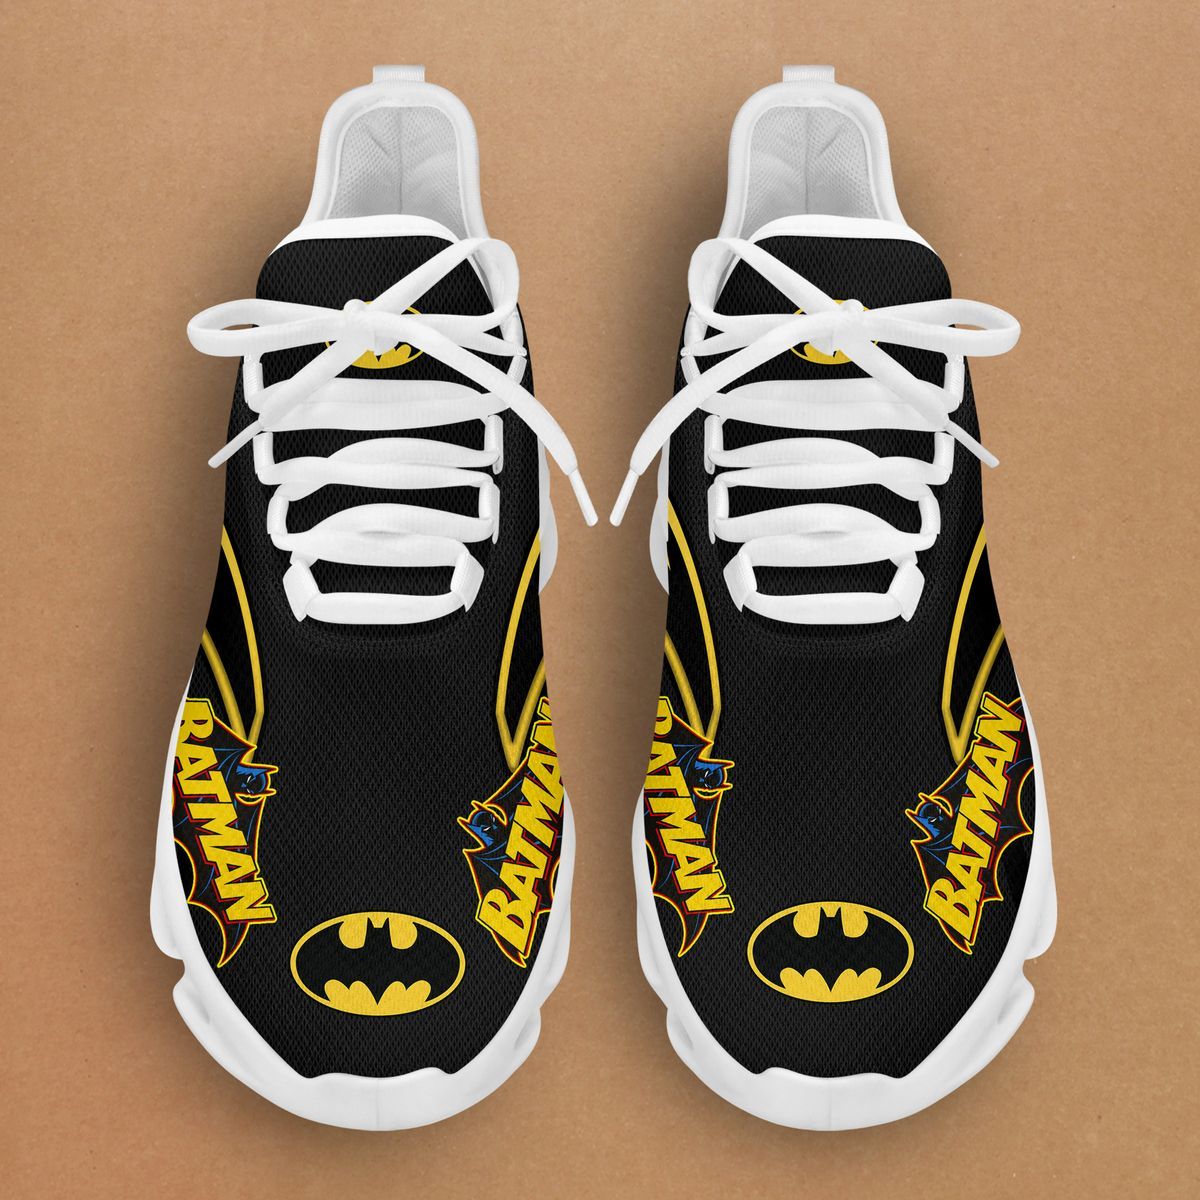 Batman Clunky Max soul shoes 2